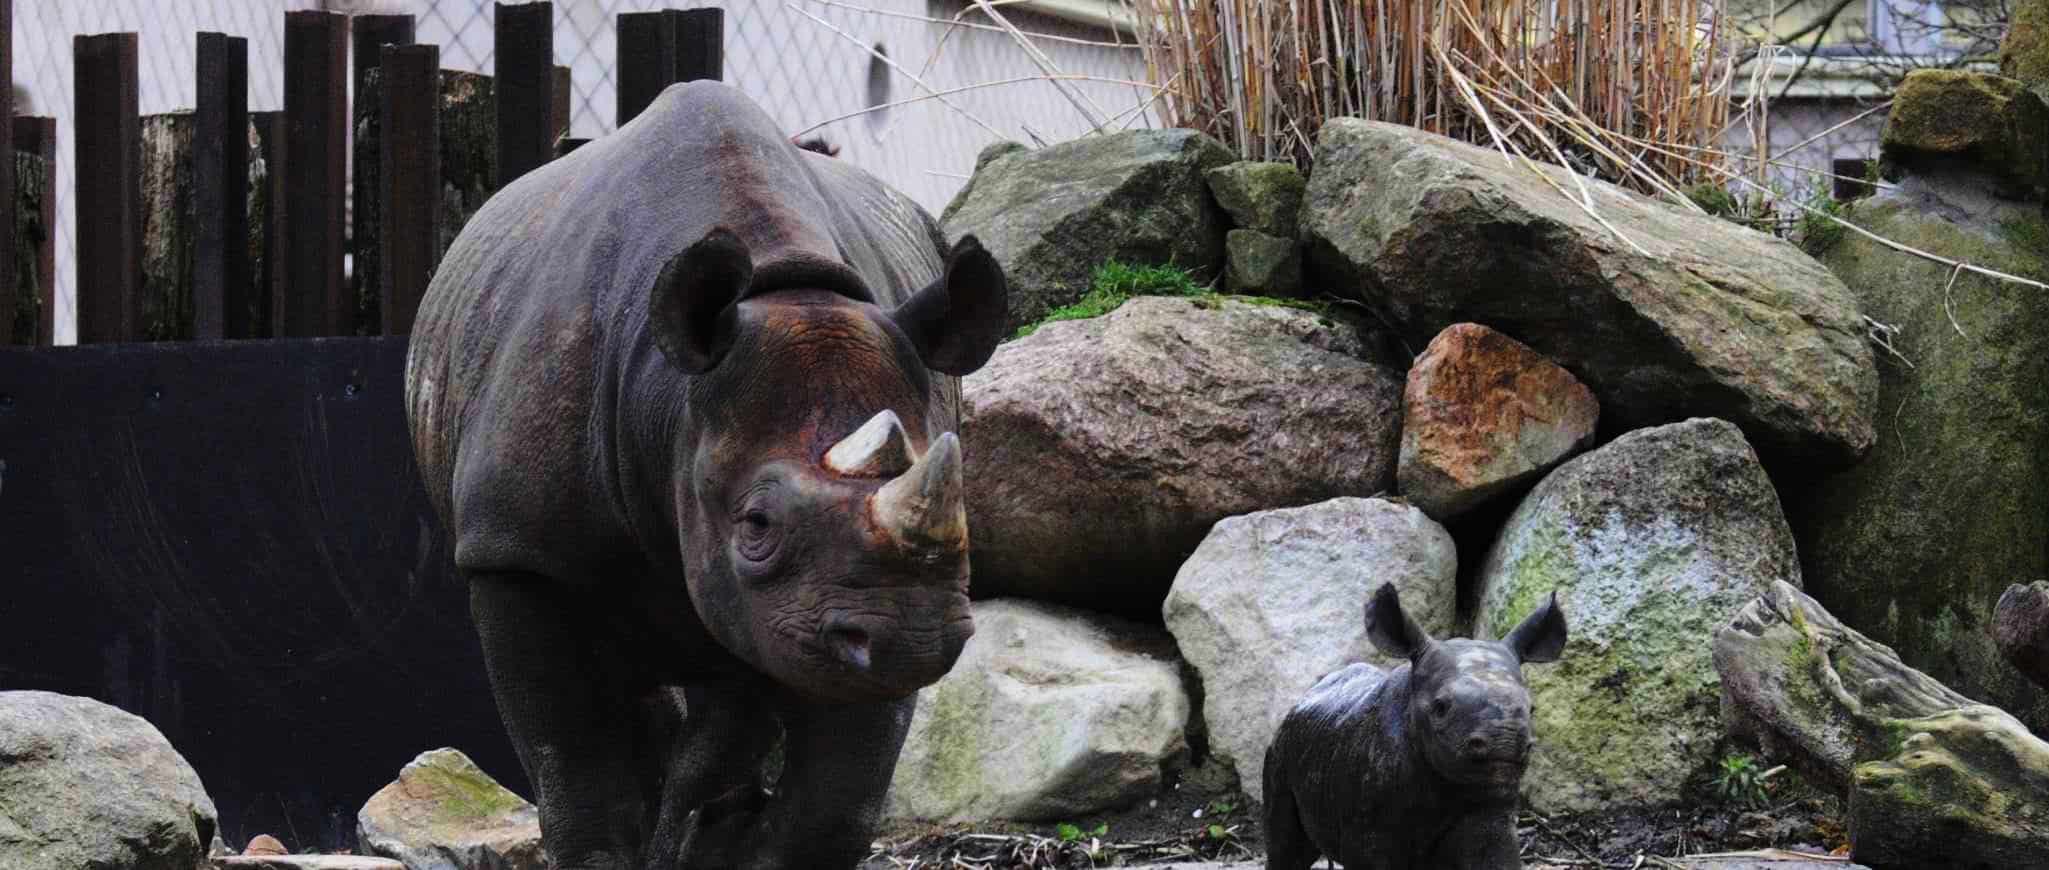 Cosas para ver en Rotterdam - Zoo de Róterdam